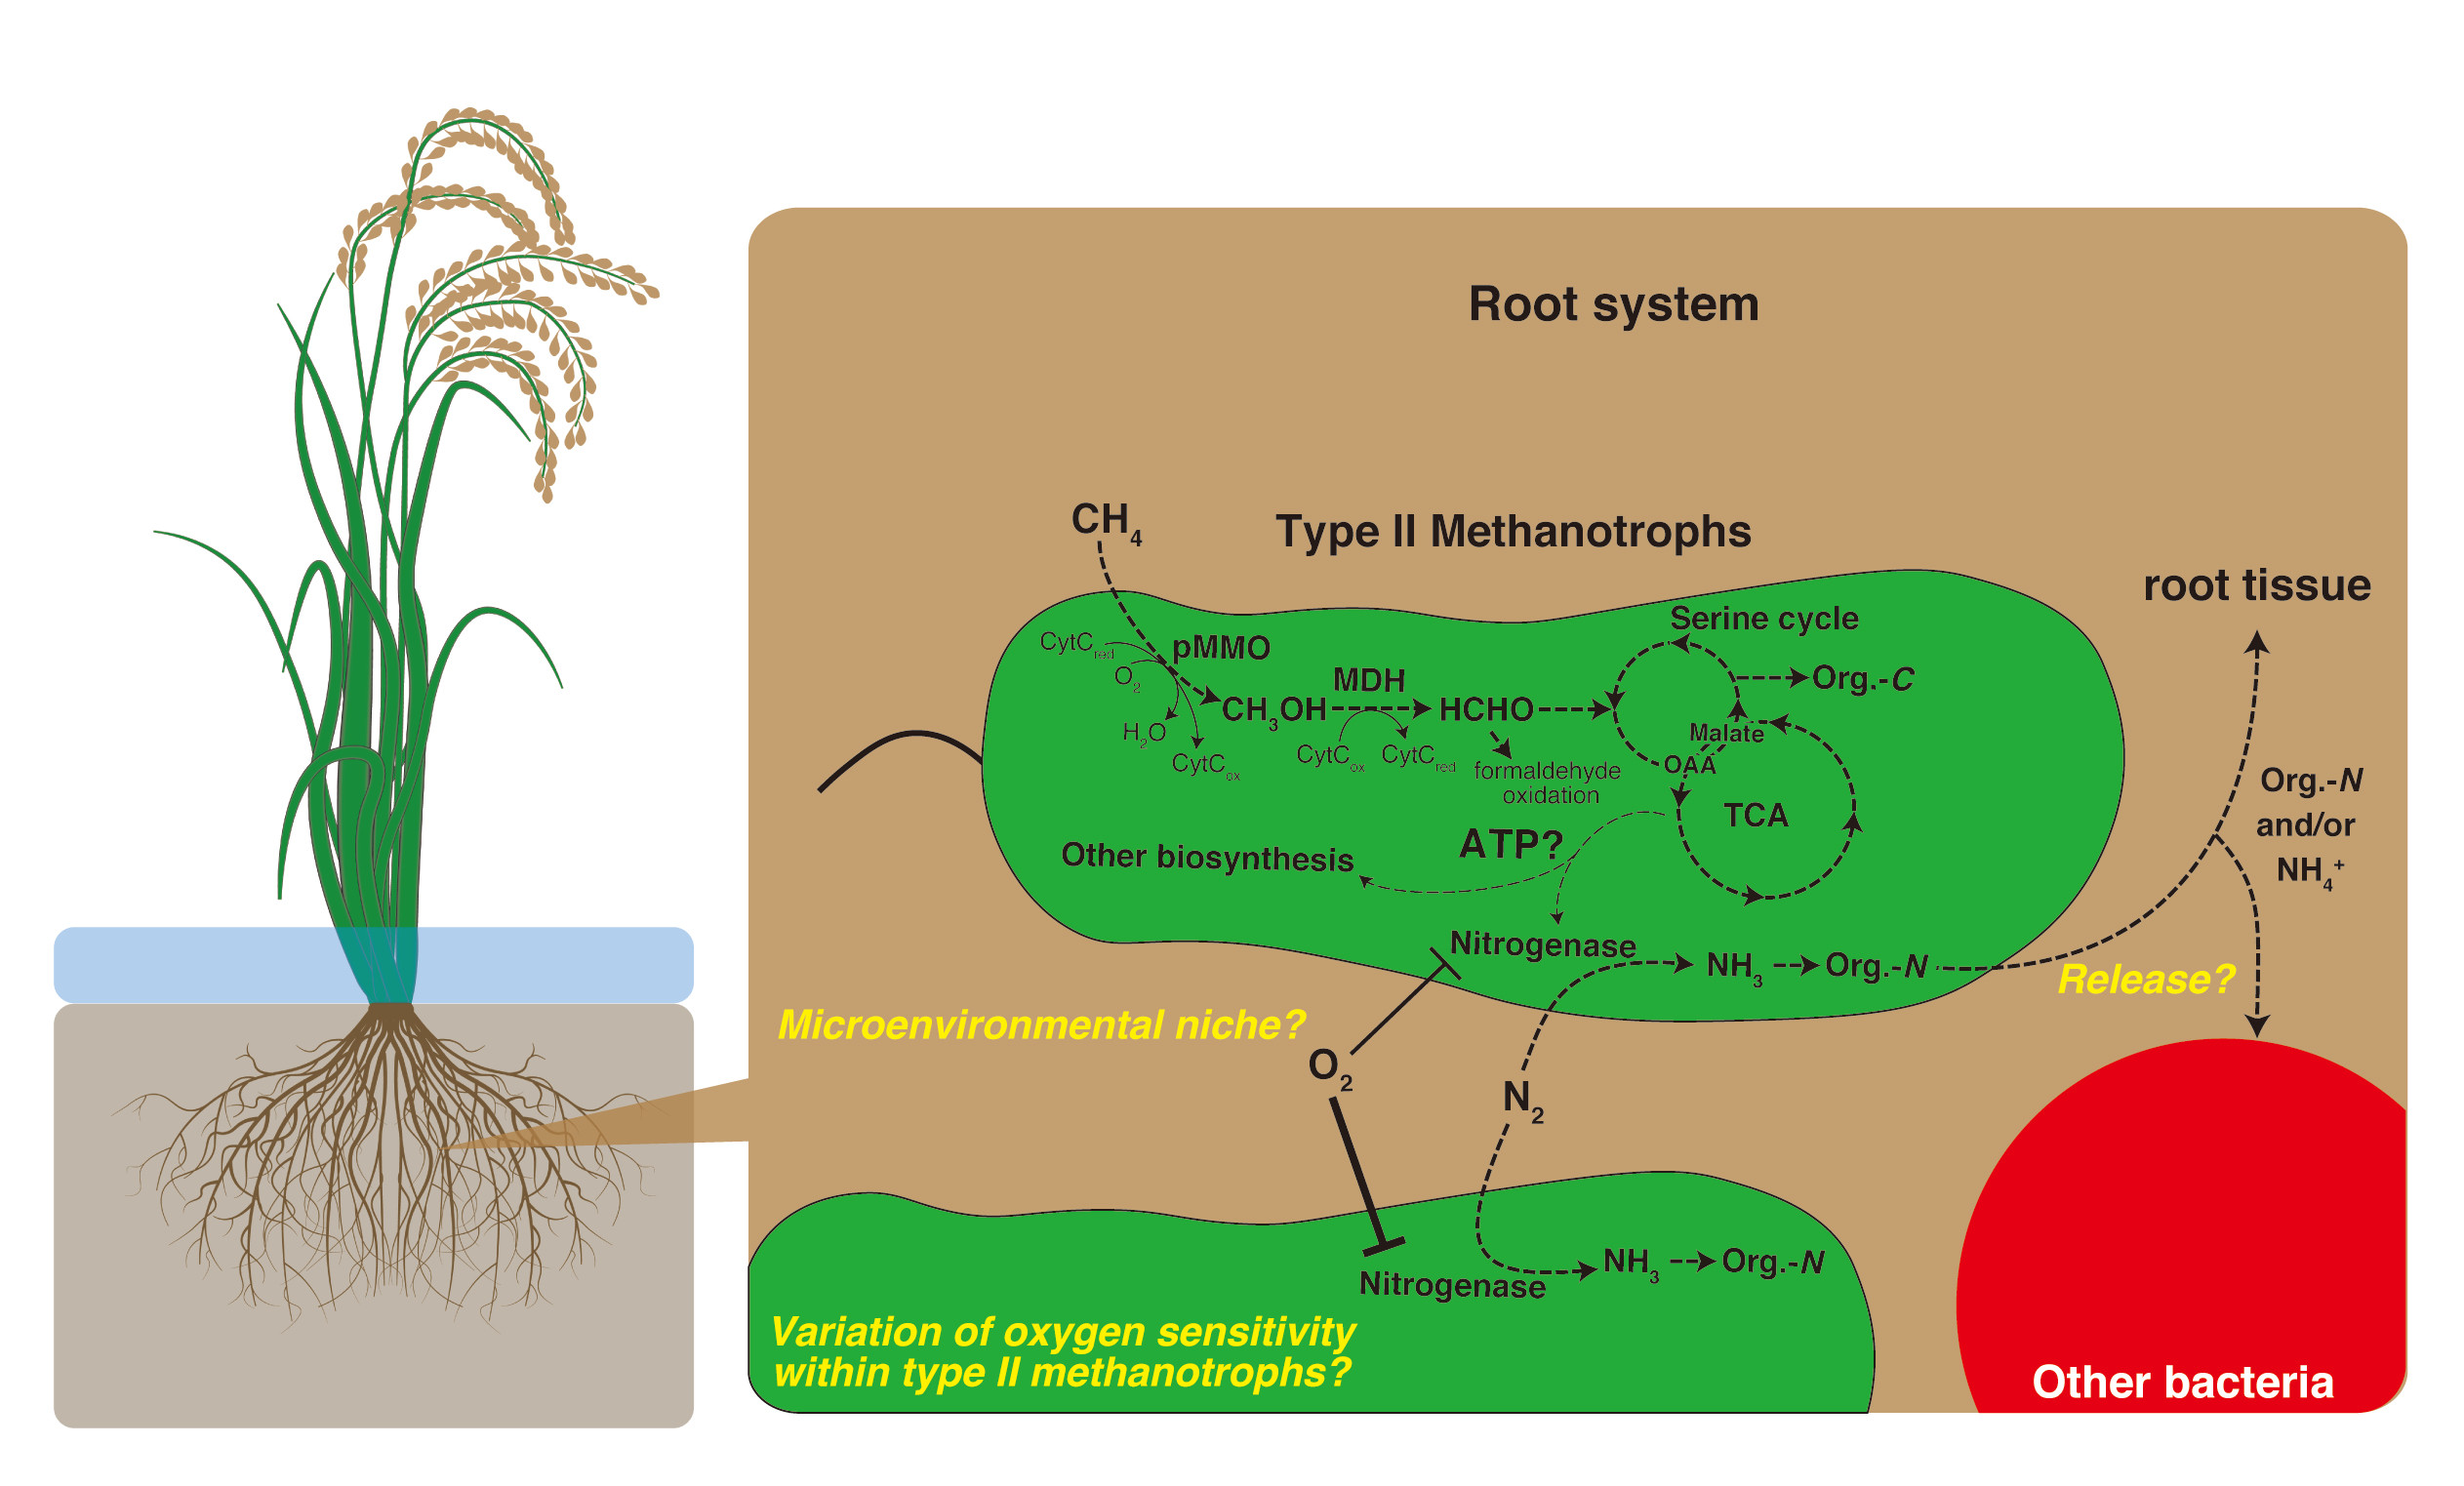 首度證實水稻根部中單一細菌體內甲烷氧化和固氮作用可耦合發生